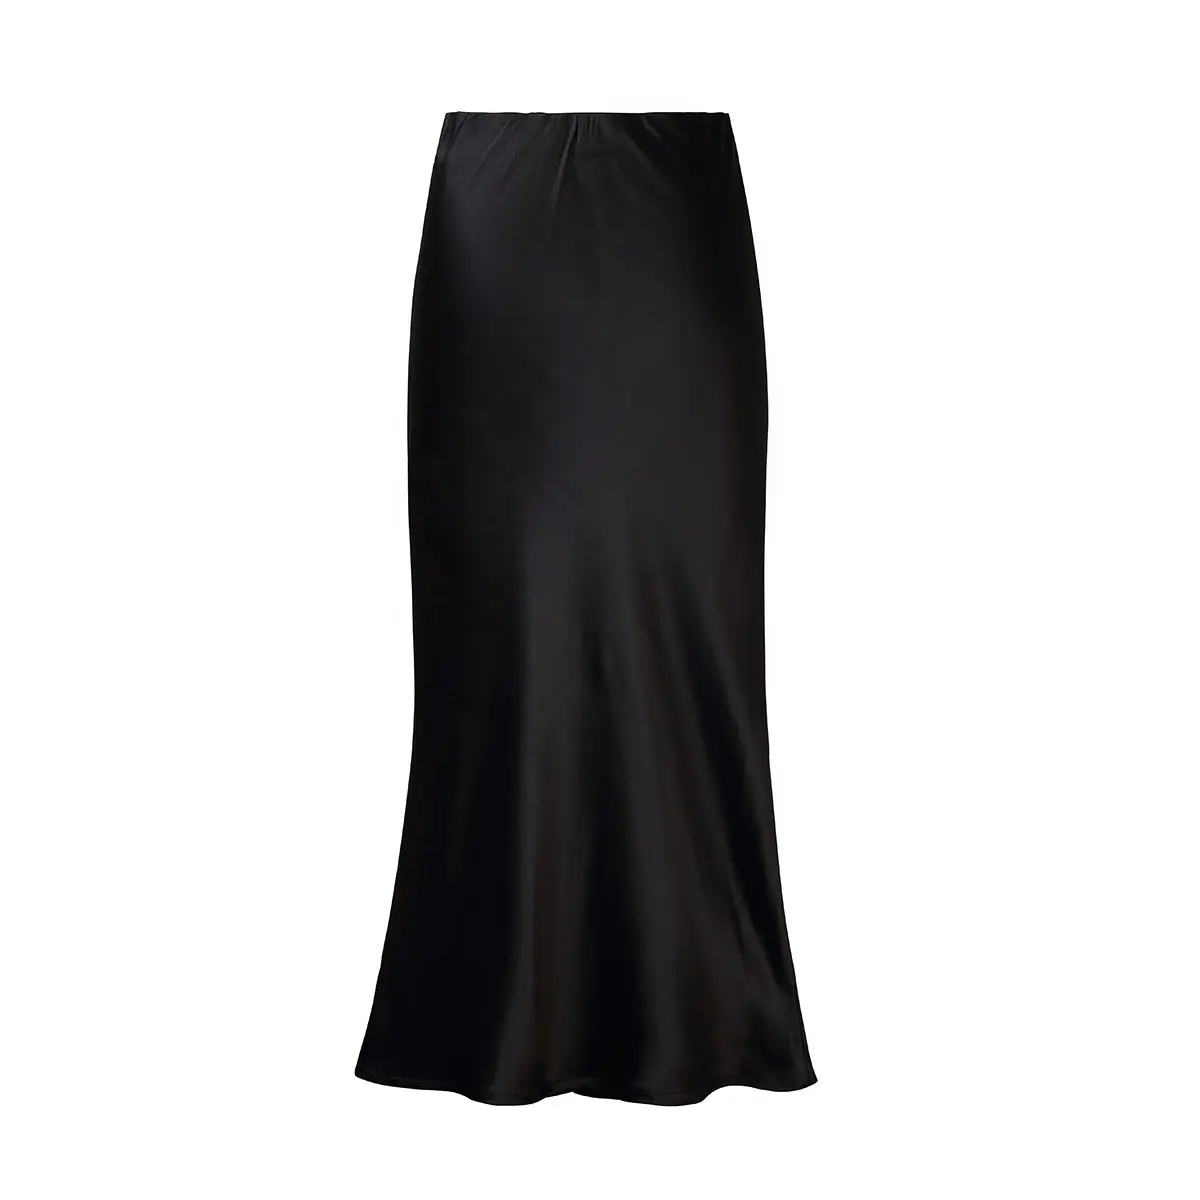 100% saia seda mulheres lápis preto saias cetim seda Boutique fabricantes elástico cintura longa saia